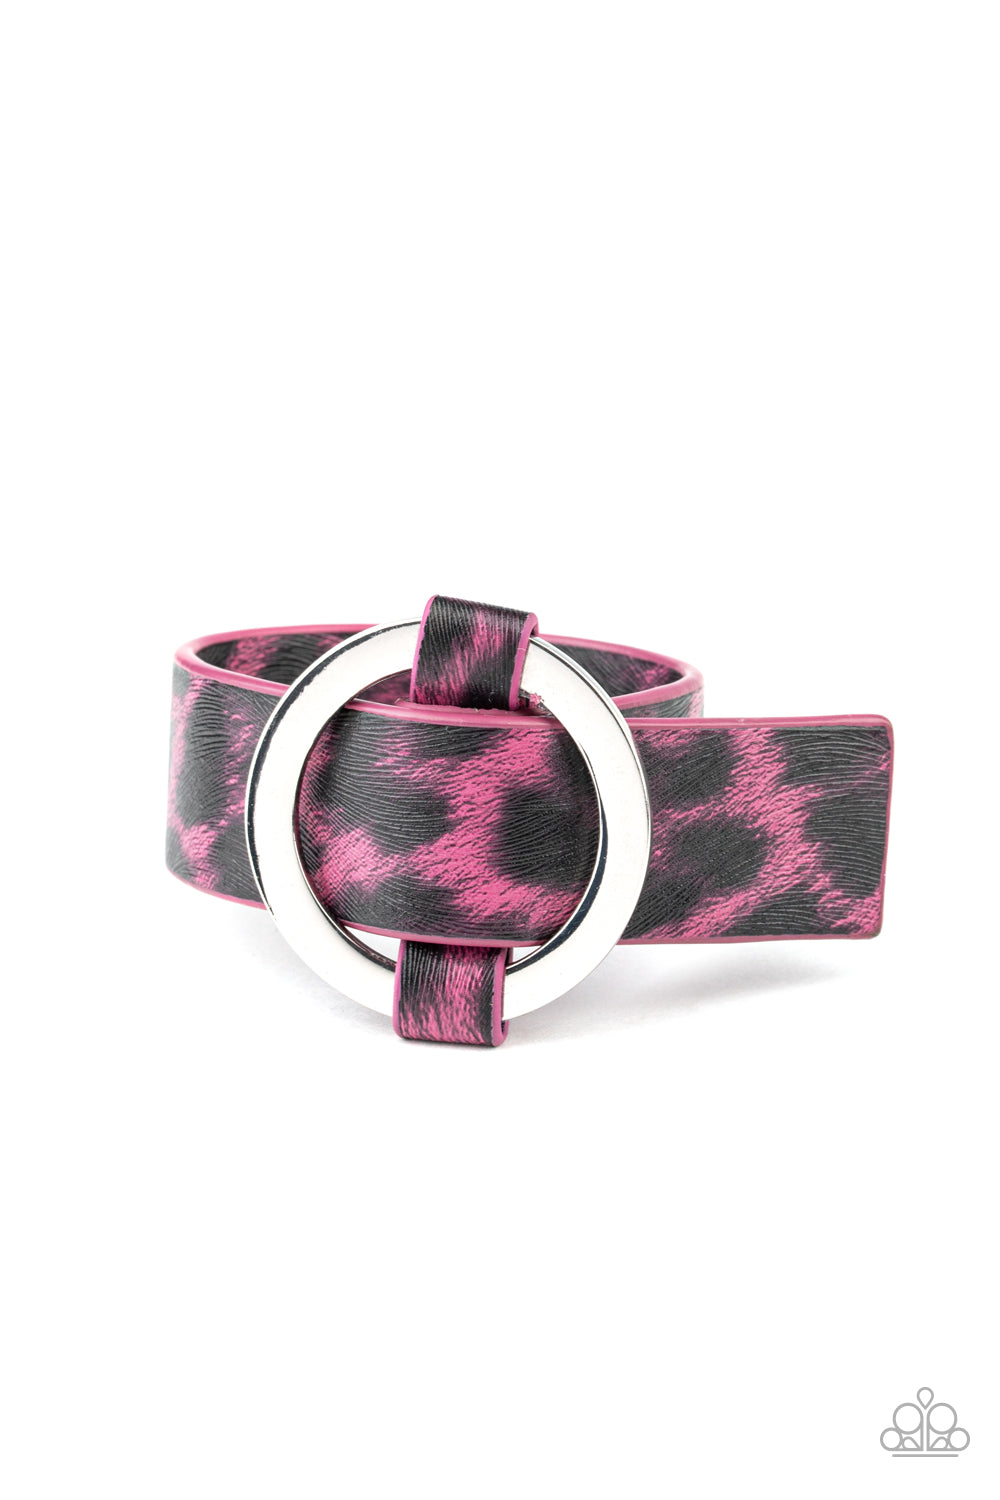 Paparazzi Accessories - Jungle Cat Couture - Pink Bracelet